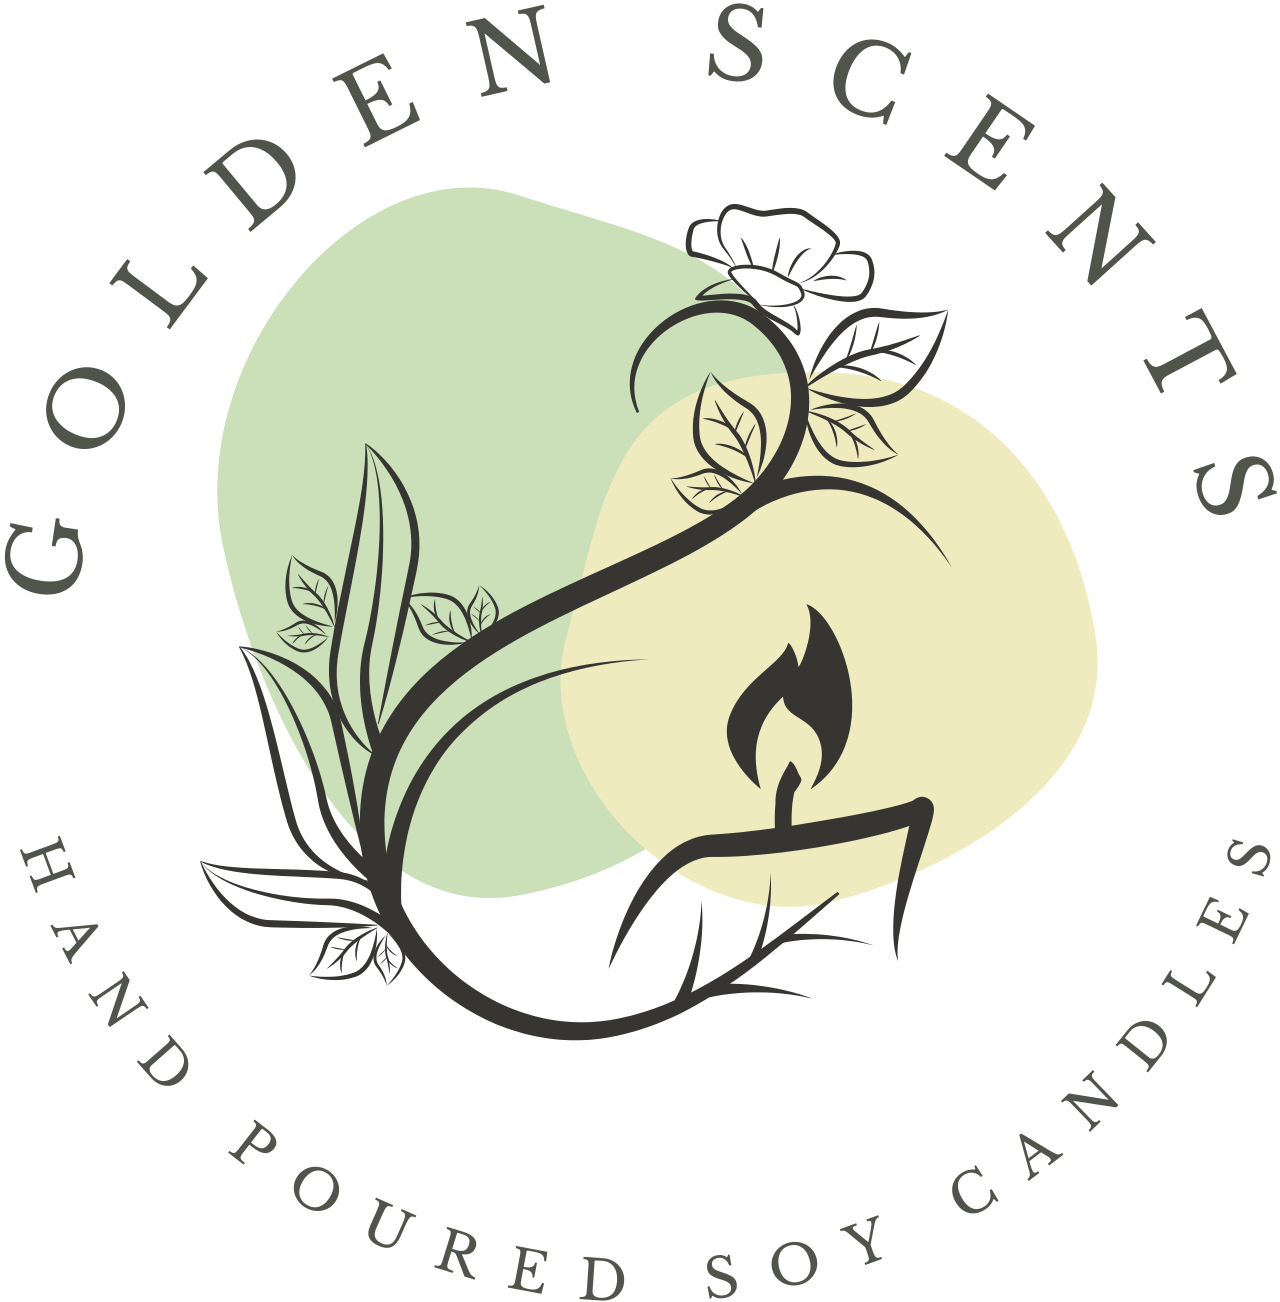 GOLDEN SCENTS 's logo